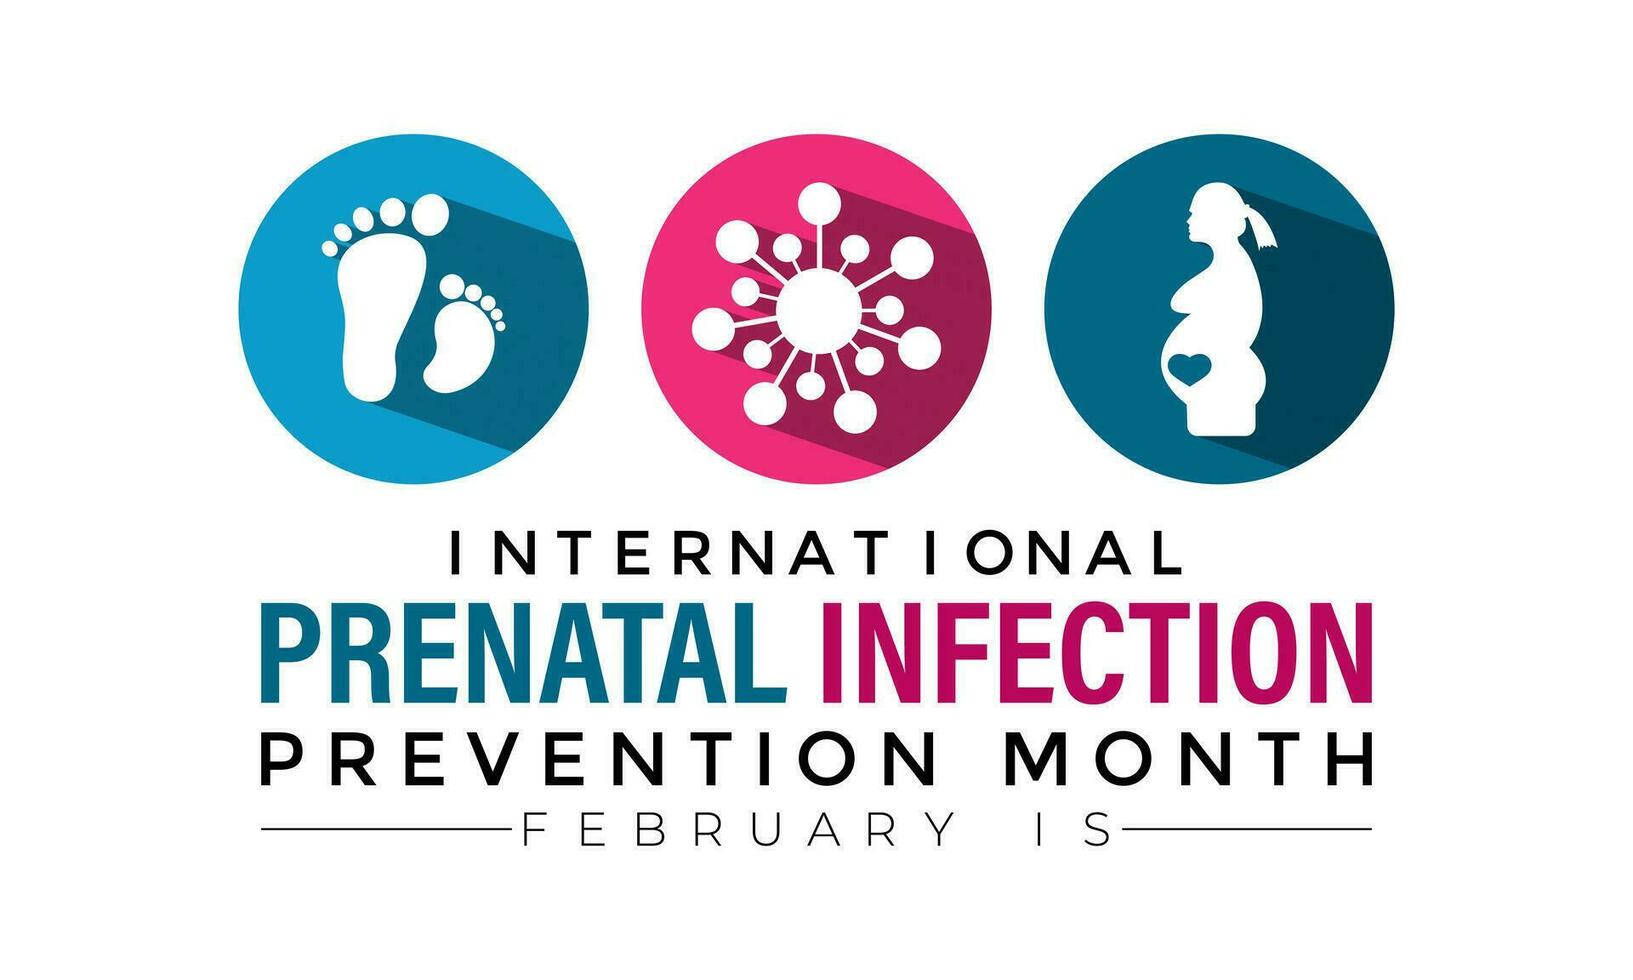 prenatal infektion förebyggande månad är observerats varje år i februari. baner, affisch, kort, bakgrund design. vektor